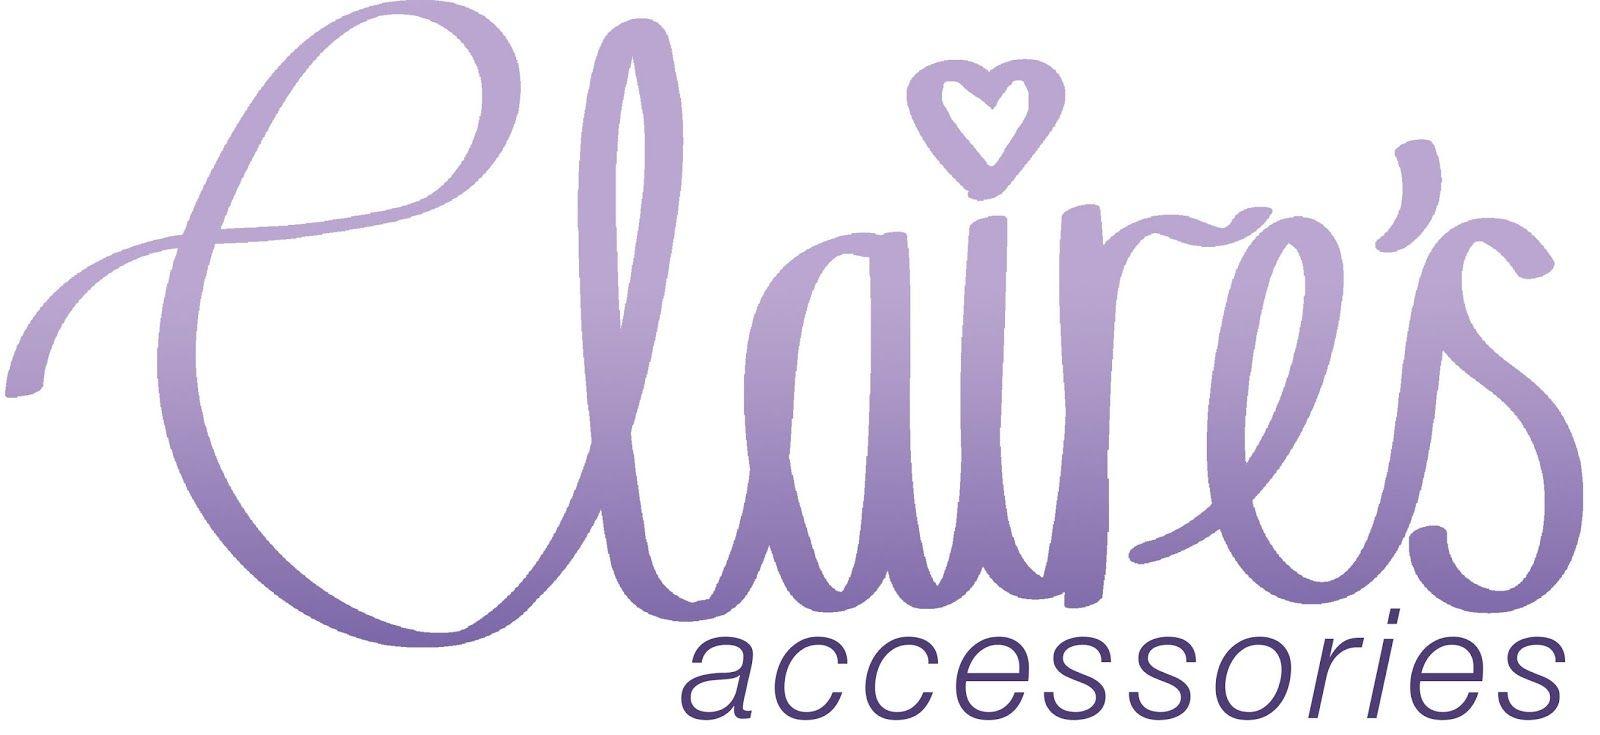 Claire's Logo - Studio Practice: Logotype's Accessories